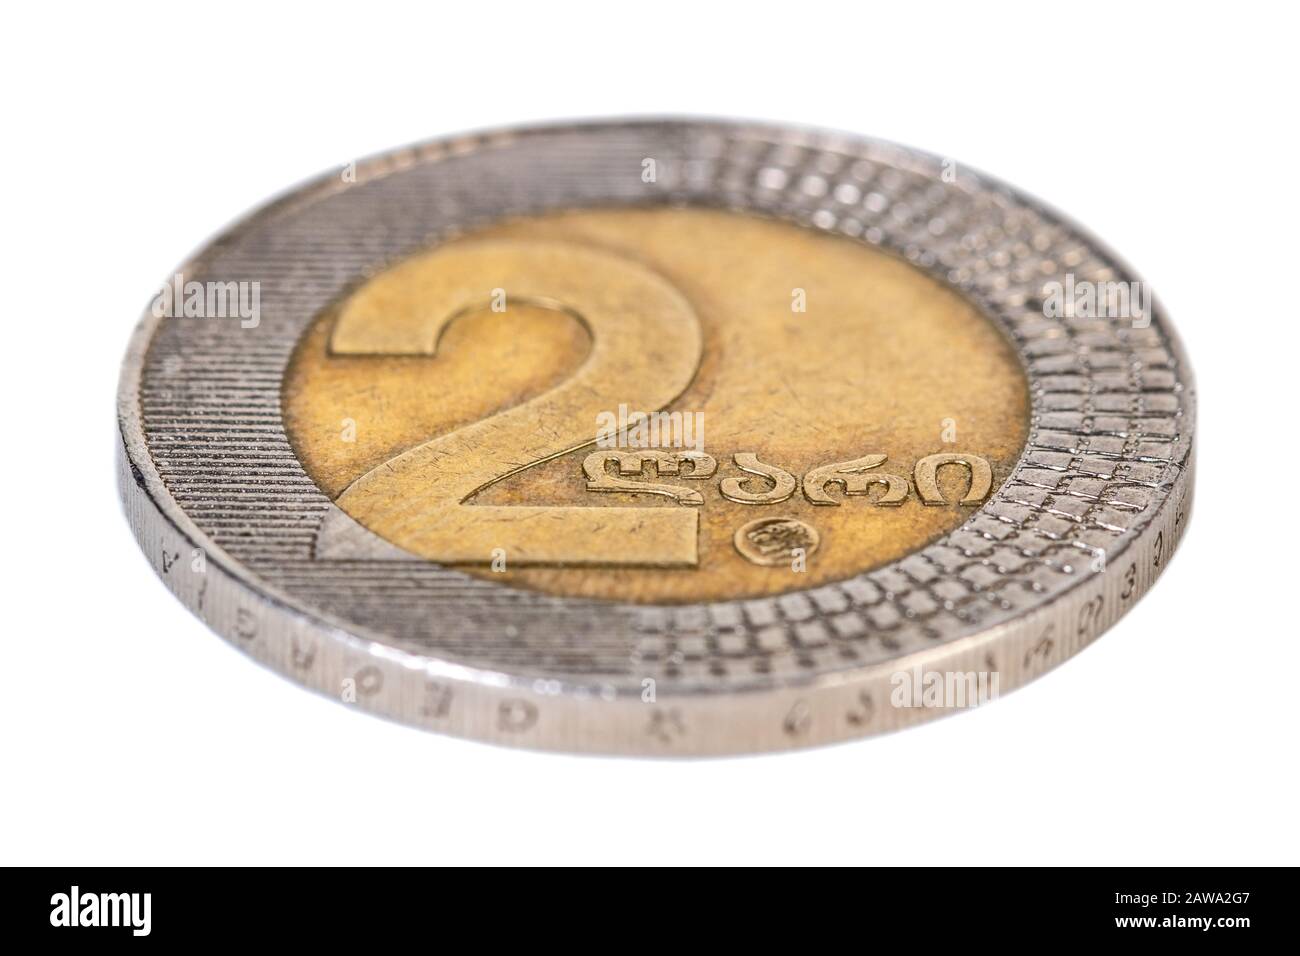 Georgian money two lari coin isolated on white Stock Photo